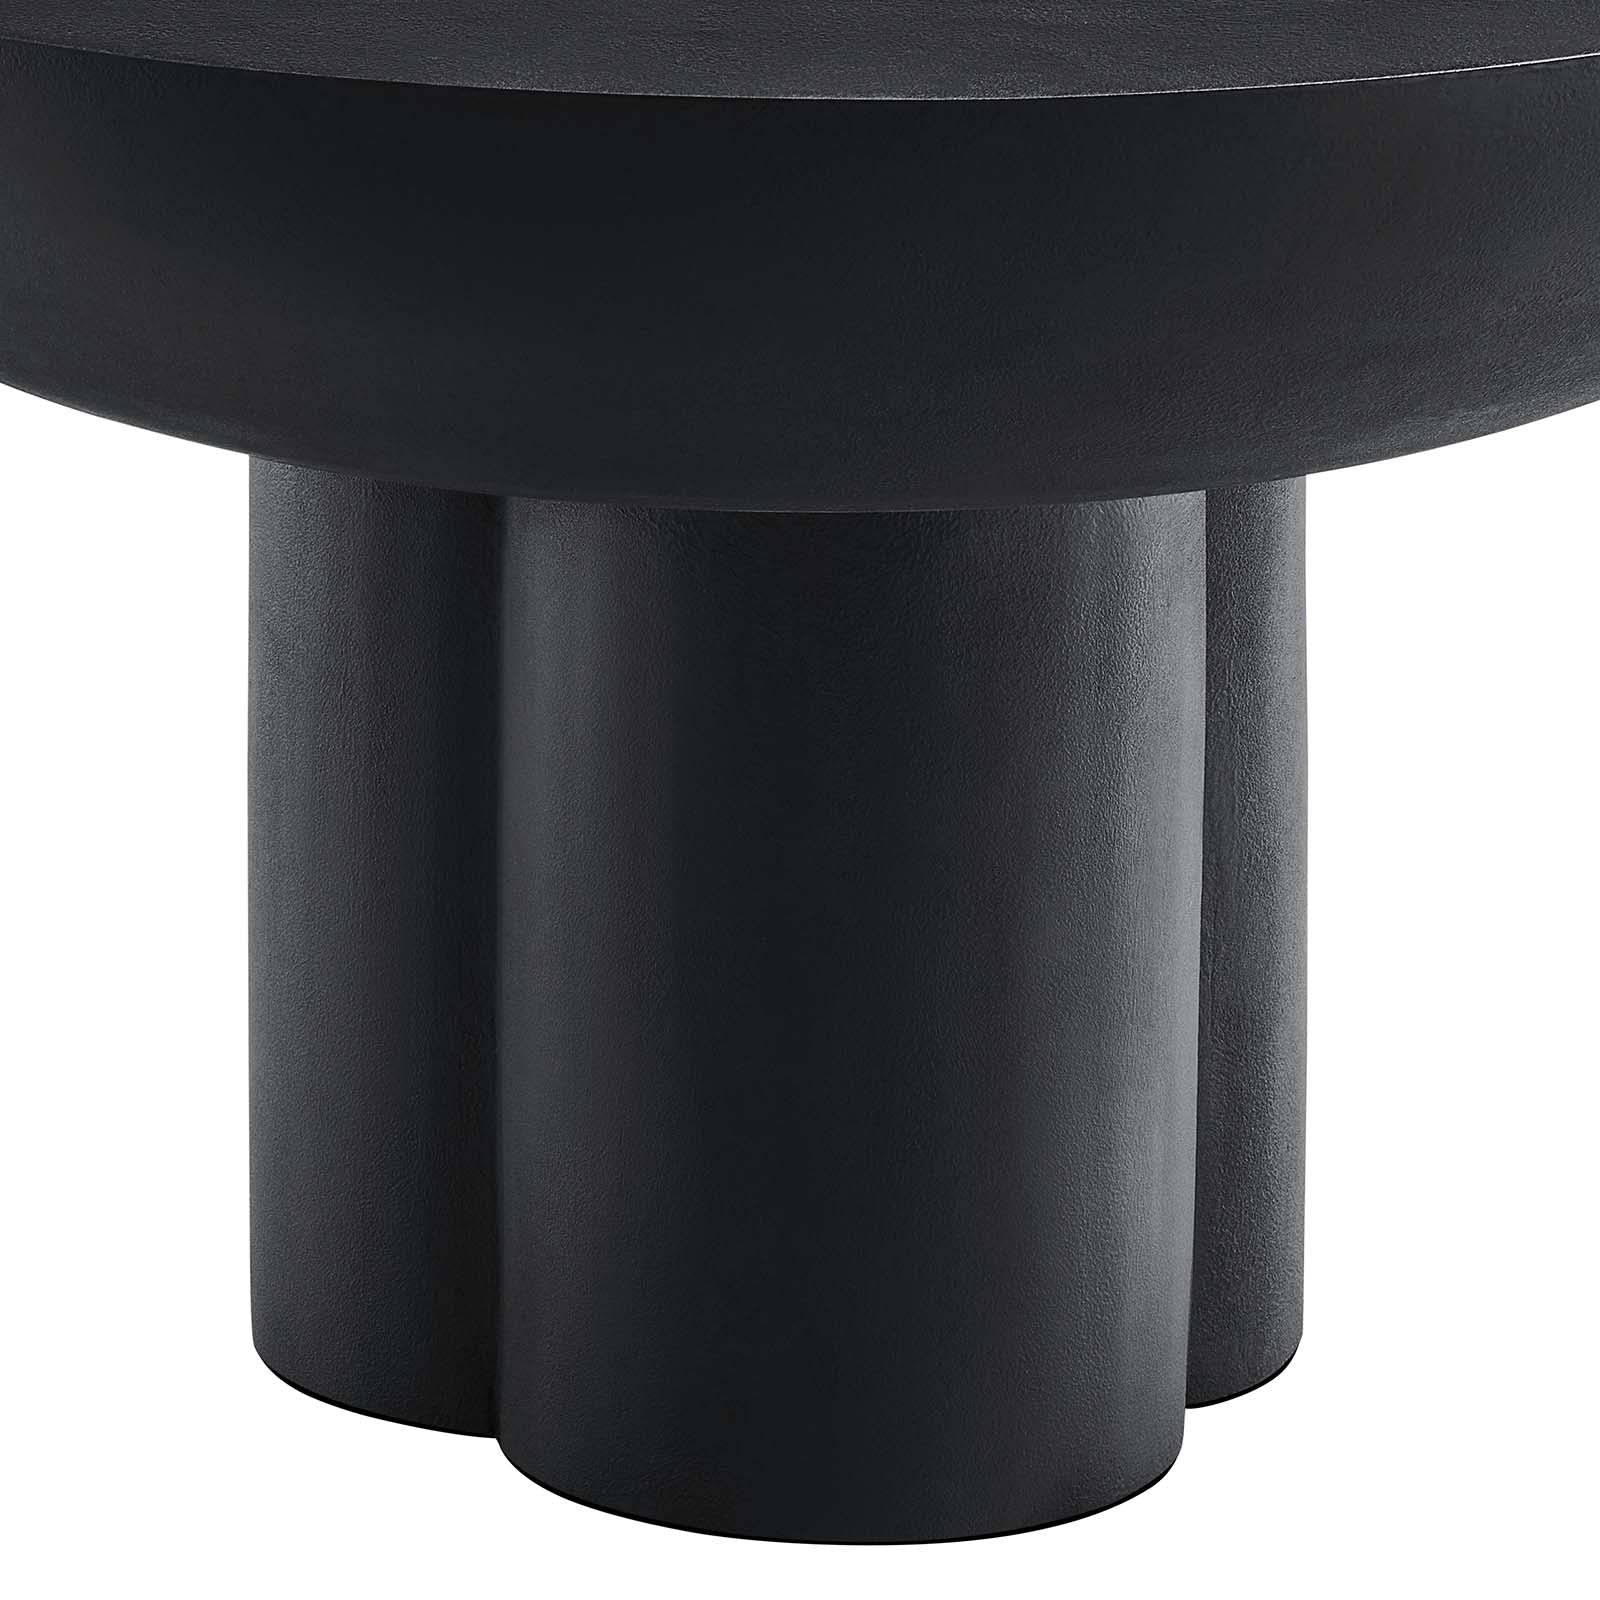 Casper Round Concrete Coffee Table - Black